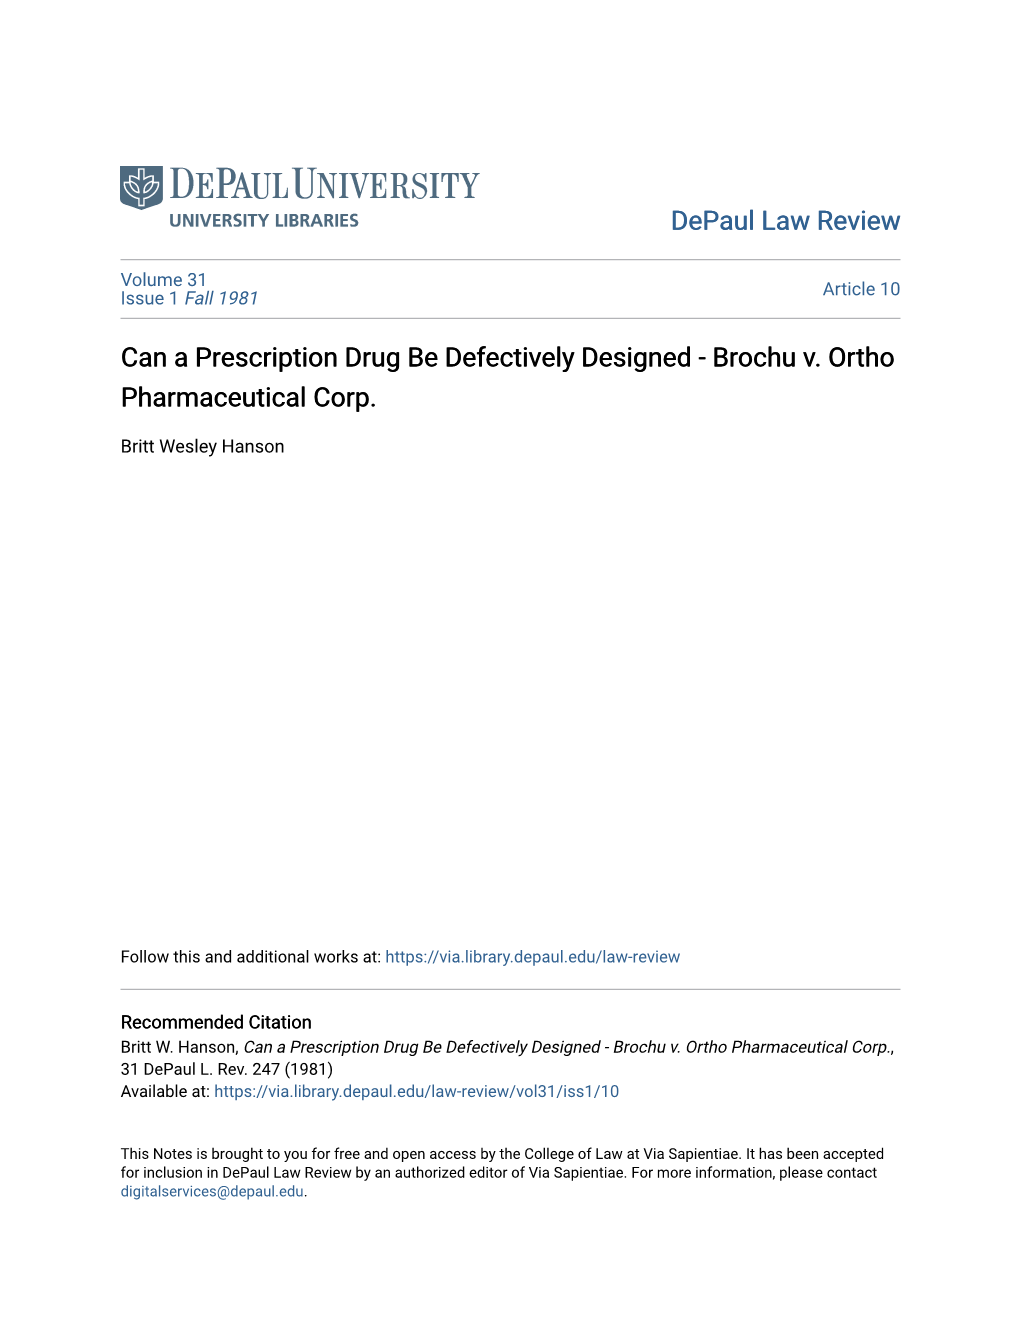 Can a Prescription Drug Be Defectively Designed - Brochu V